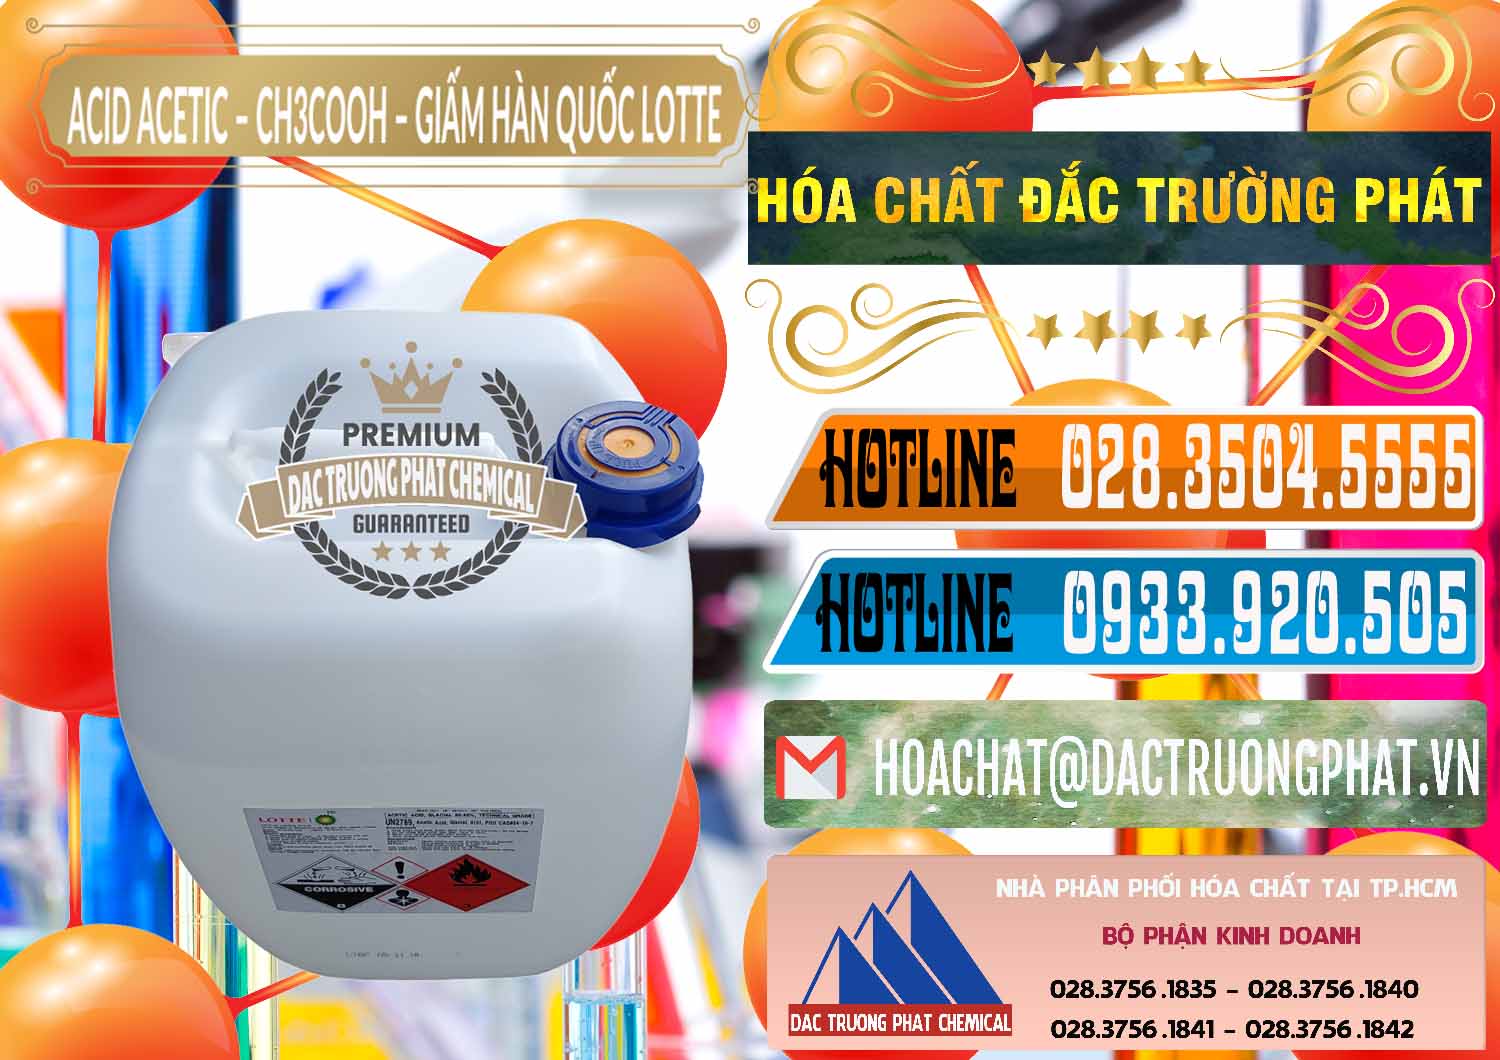 Cty chuyên bán & cung ứng Acetic Acid – Axit Acetic Hàn Quốc Lotte Korea - 0002 - Công ty chuyên cung ứng - phân phối hóa chất tại TP.HCM - stmp.net